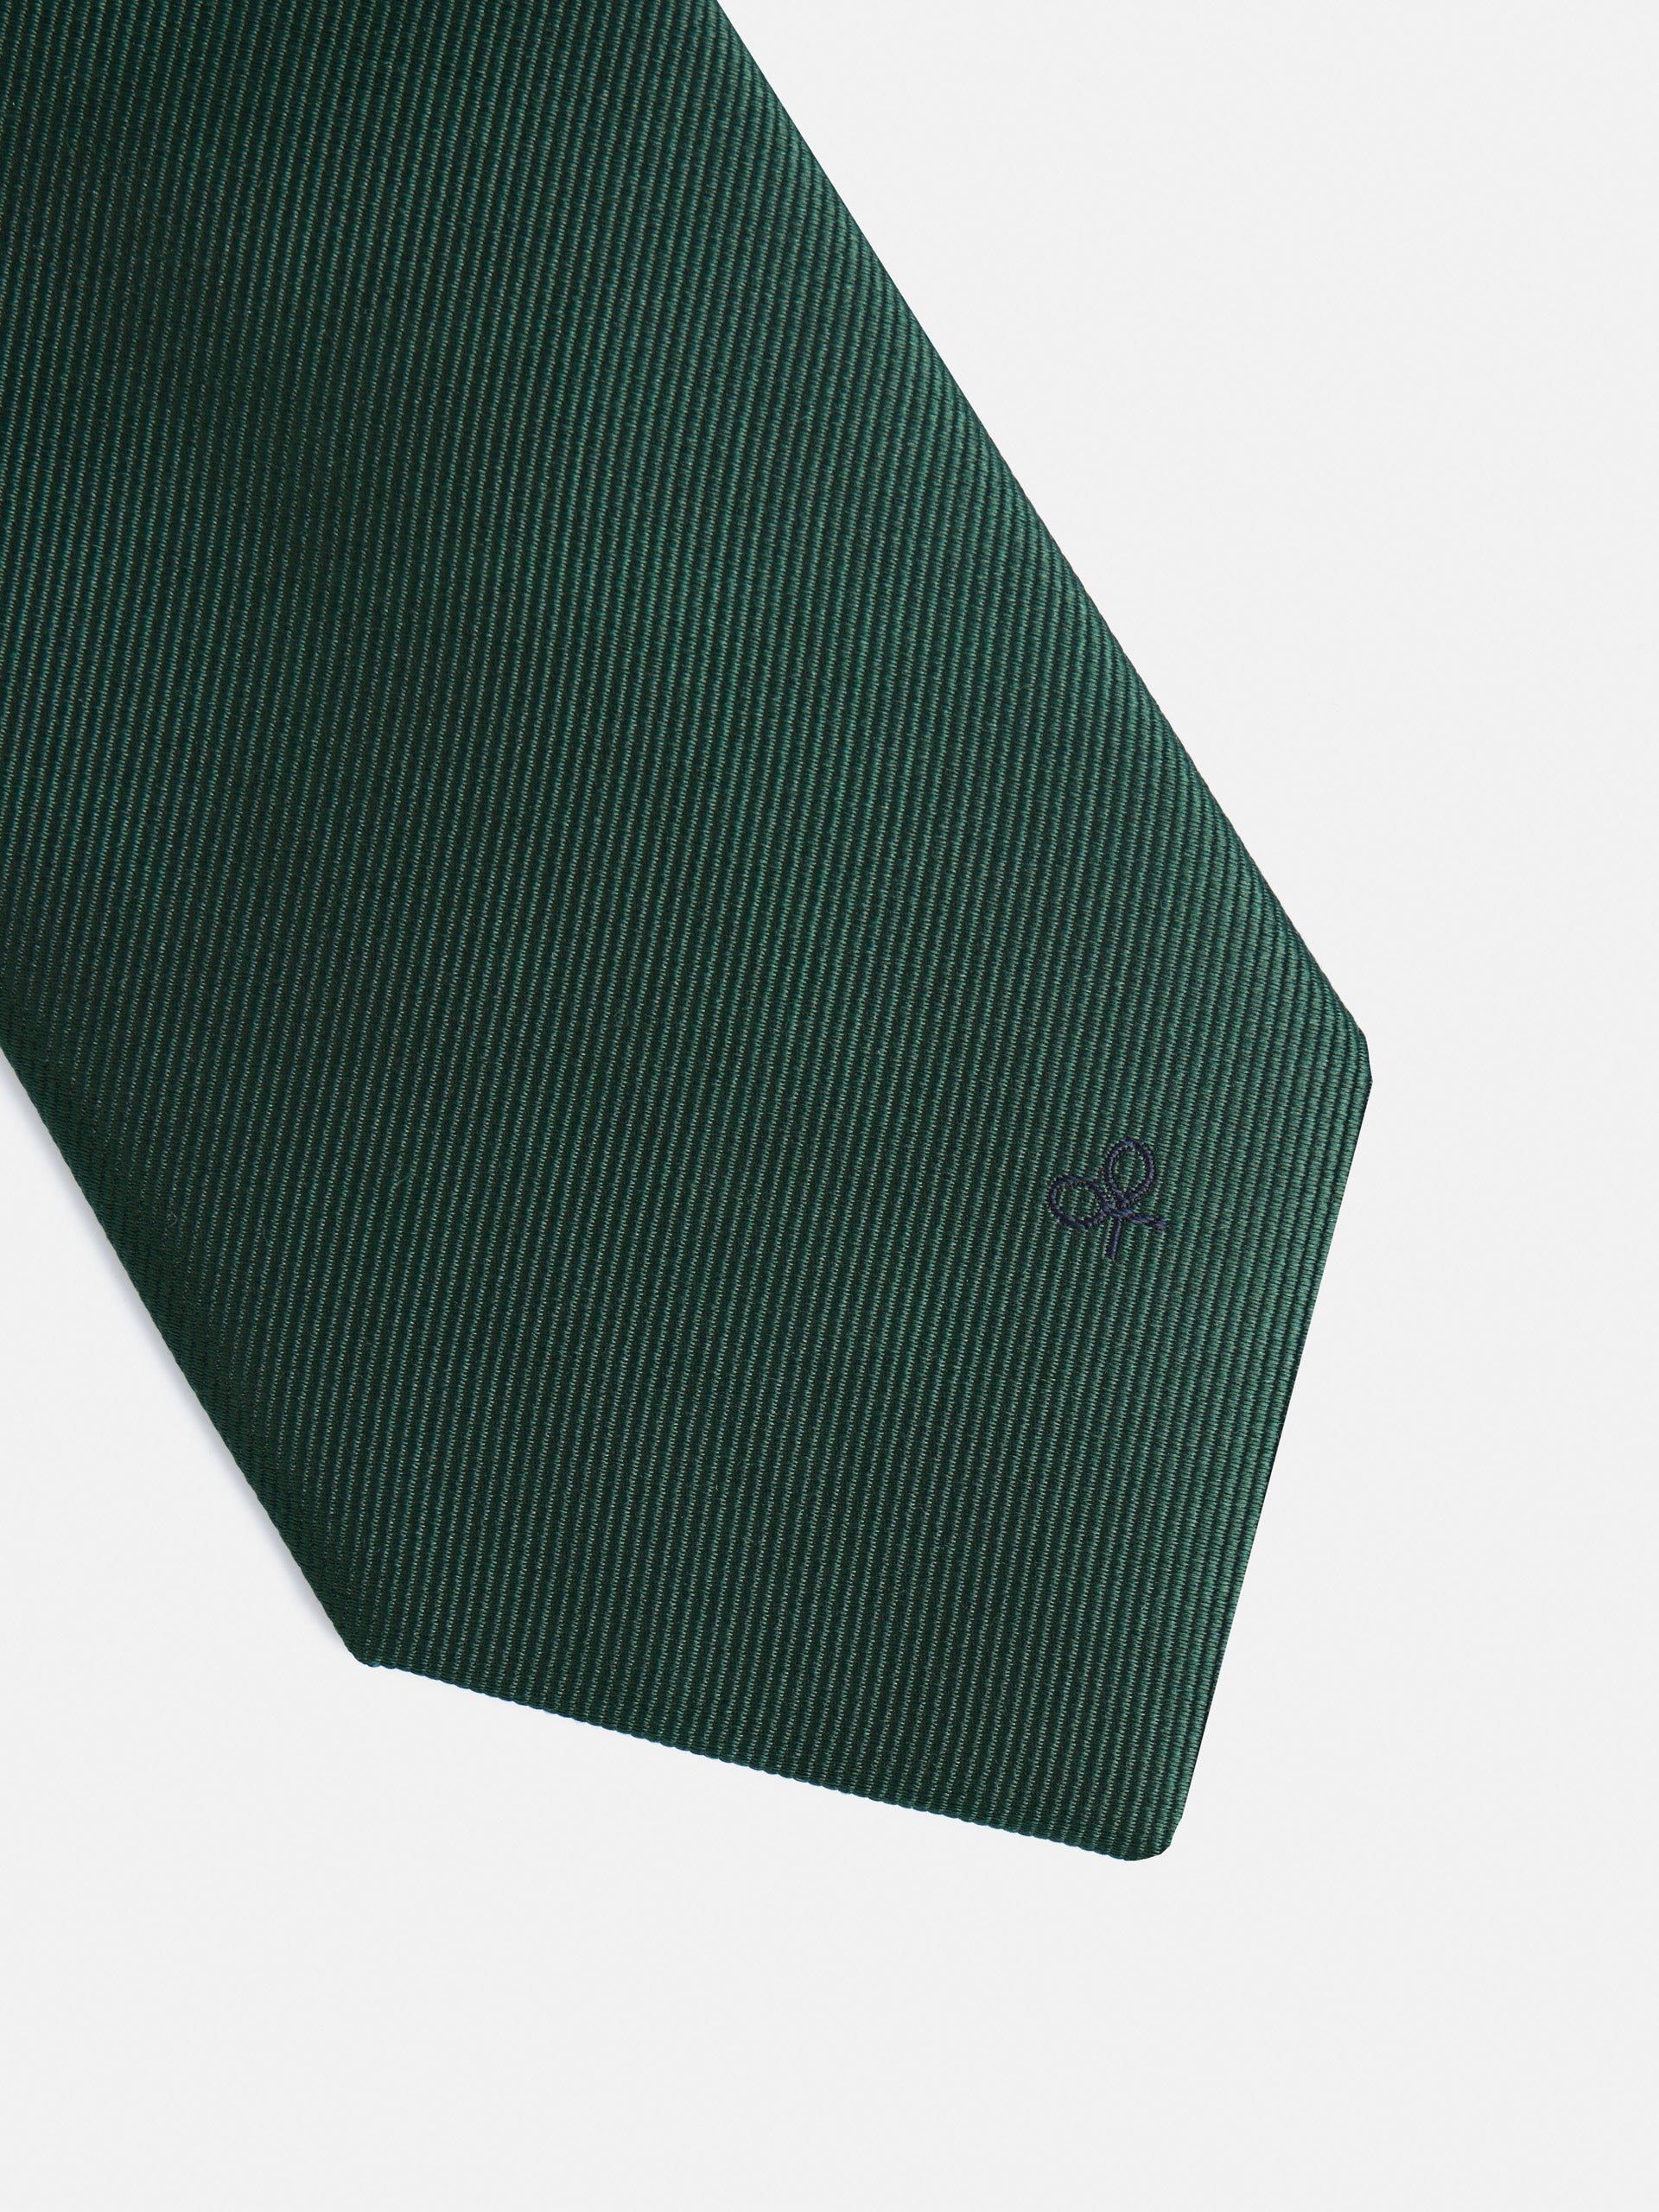 Smooth green silbon tie